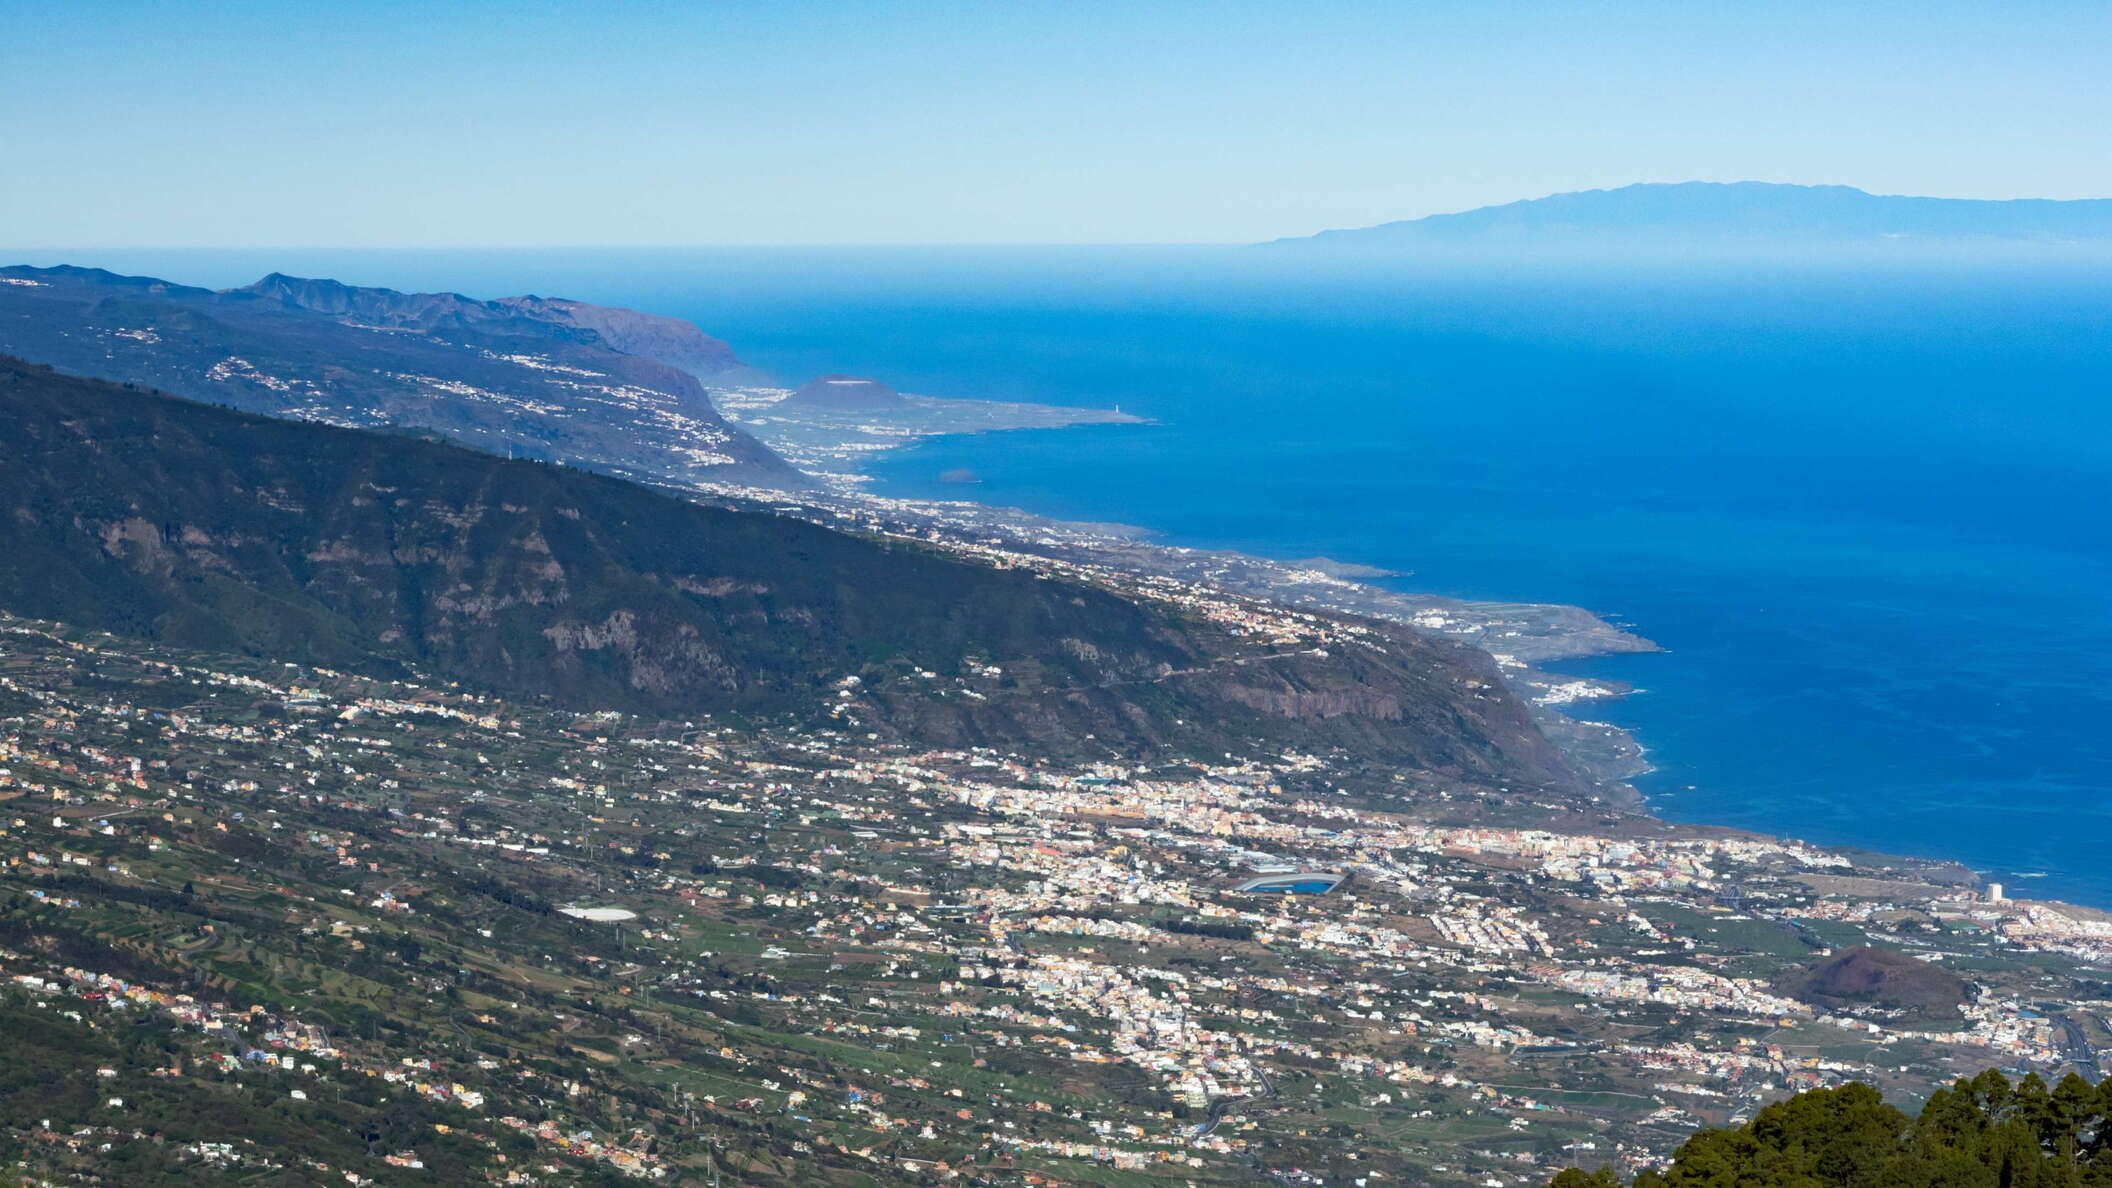 Valle de La Orotava and La Palma